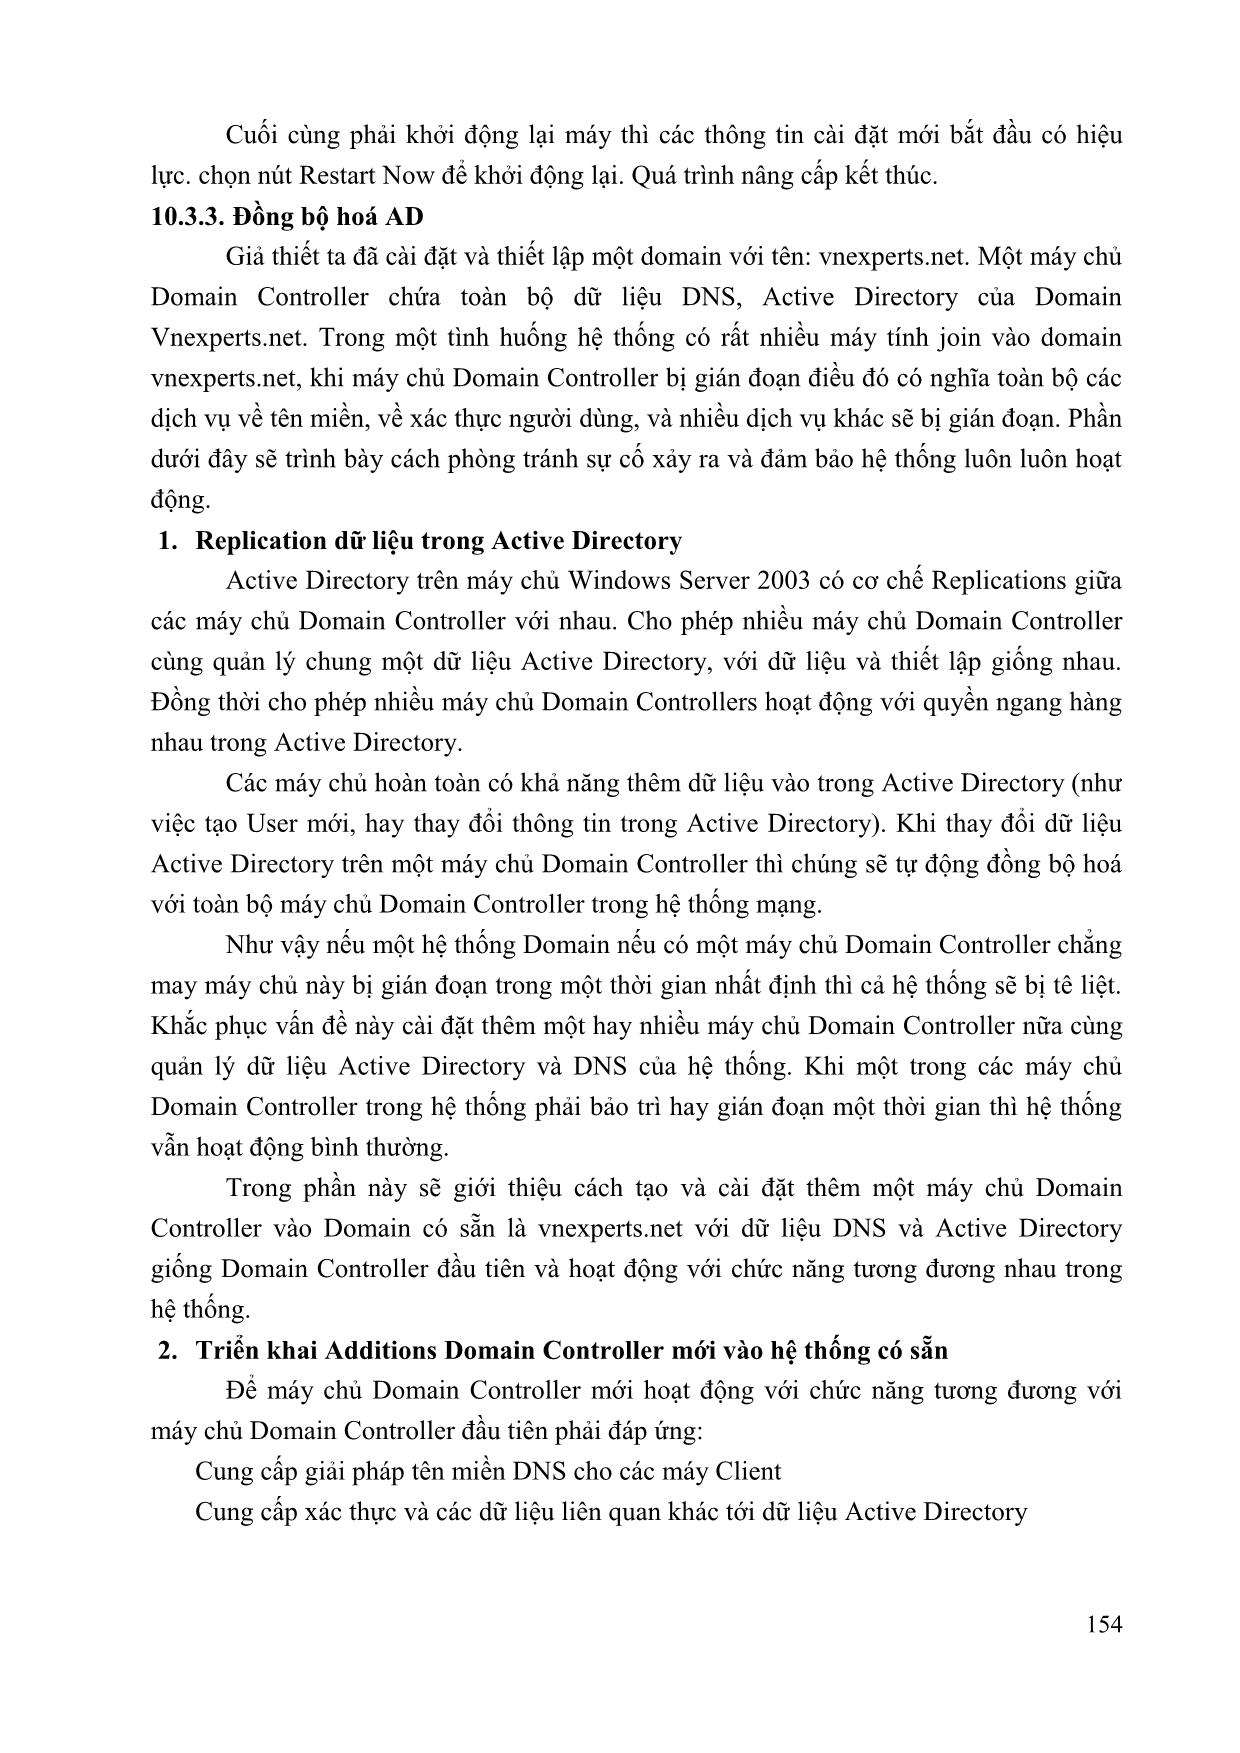 Giáo trình Thực hành tích hợp và an toàn hệ thống (Phần 2) trang 10